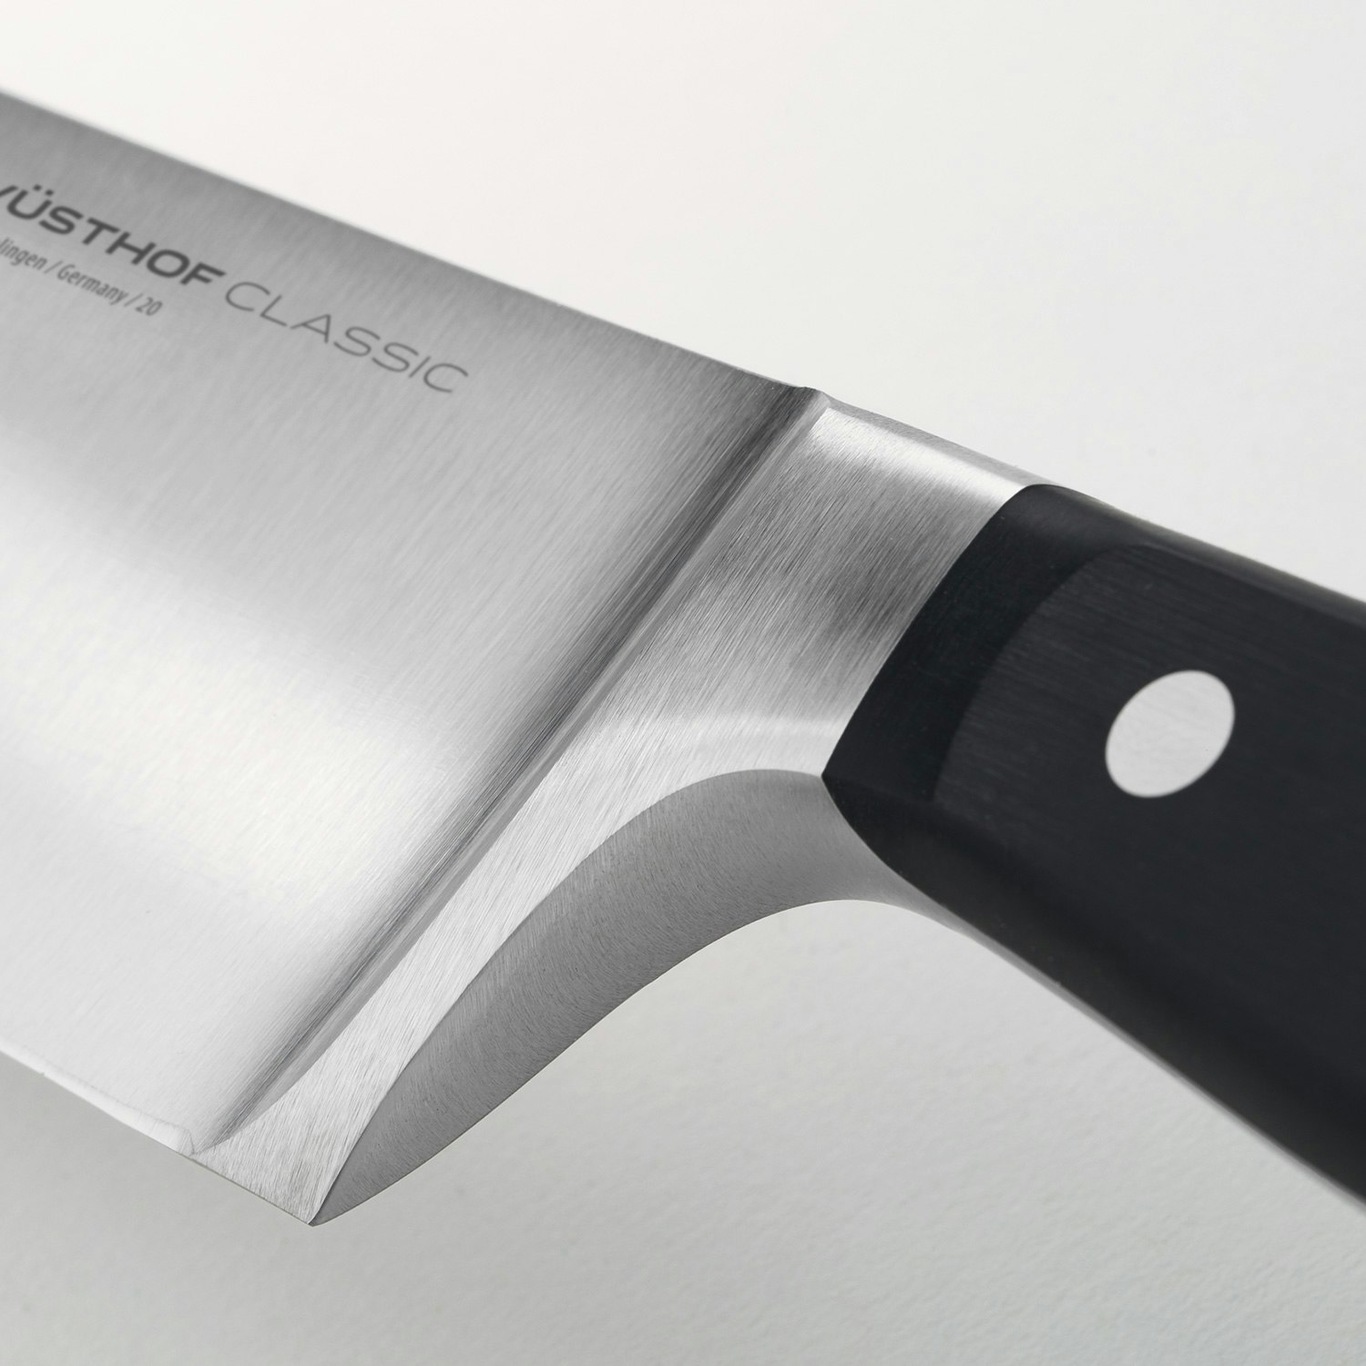 https://royaldesign.com/image/2/wusthof-classic-knife-set-3-pack-2?w=800&quality=80